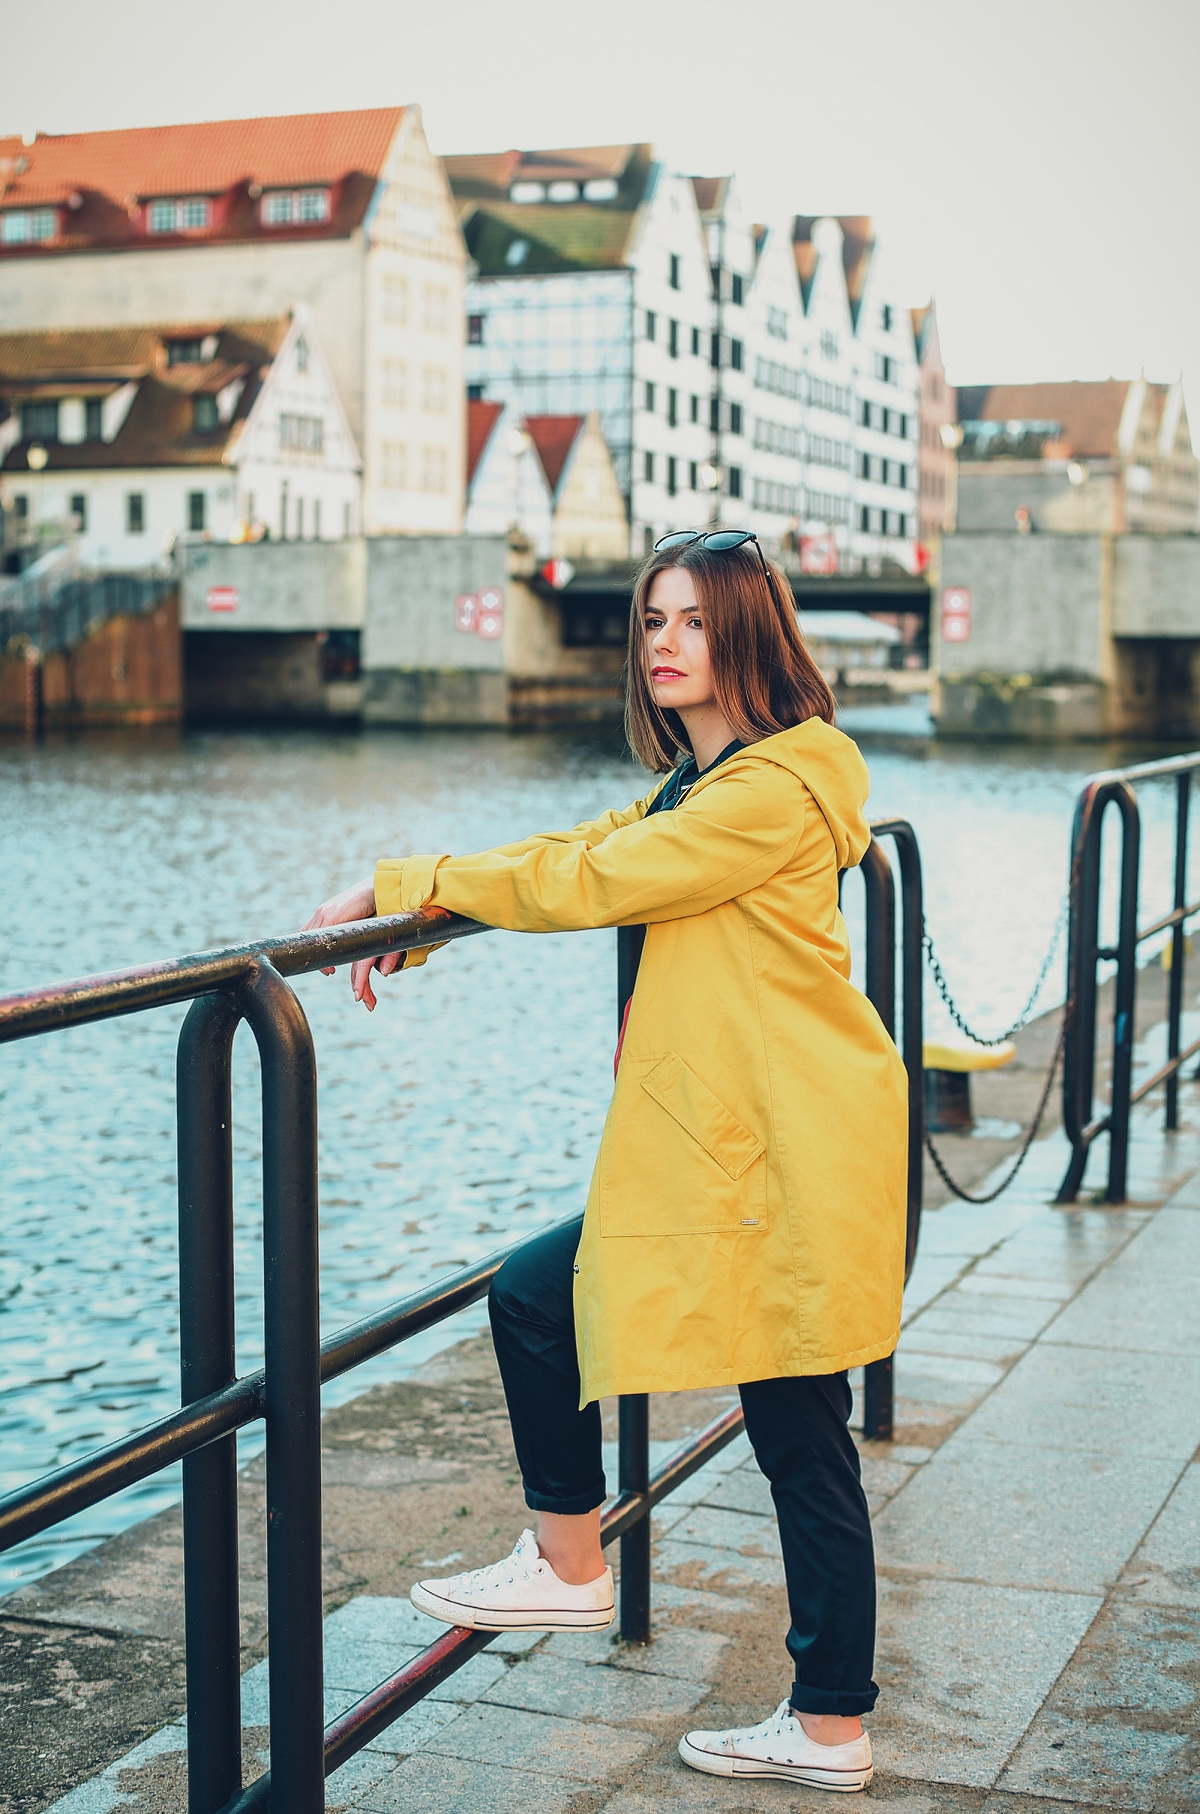 żółty sztormiak przeciwdeszczowa kurtka stylizacja blog modowy